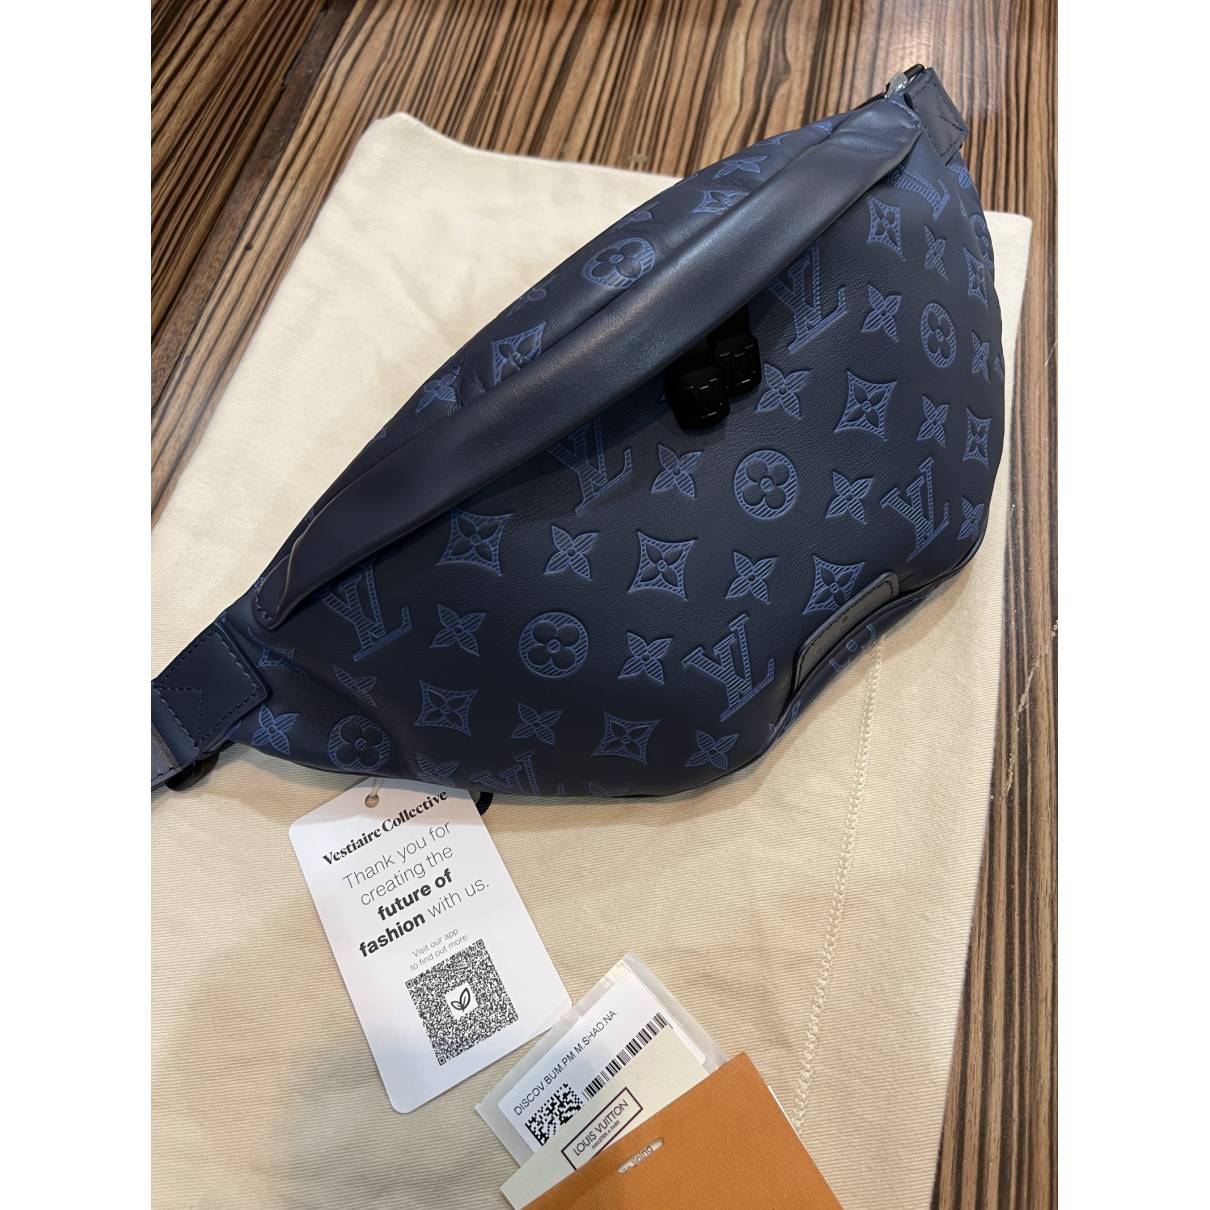 Bum bag / sac ceinture wool handbag Louis Vuitton Beige in Wool - 21283243